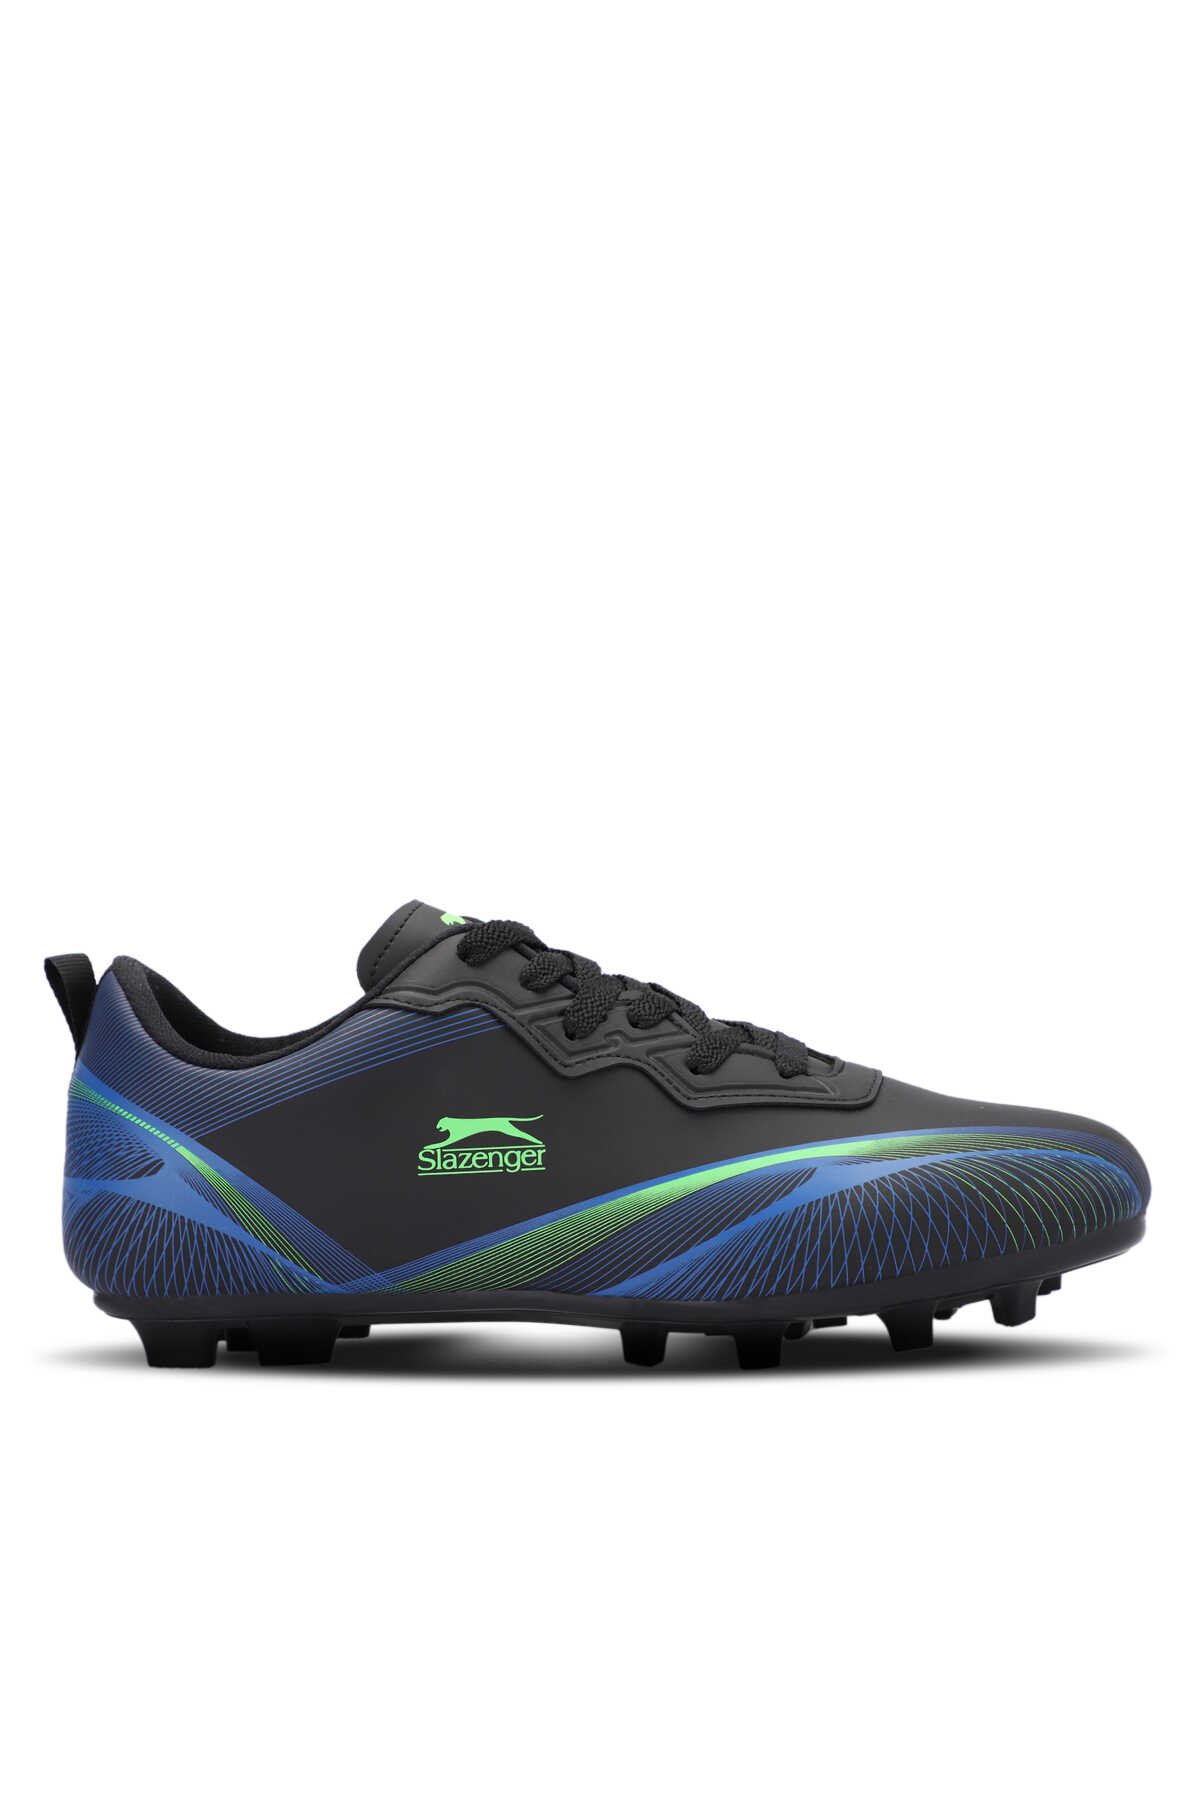 Slazenger - Slazenger MARCELL KRP Futbol Erkek Krampon Ayakkabı Siyah / Yeşil